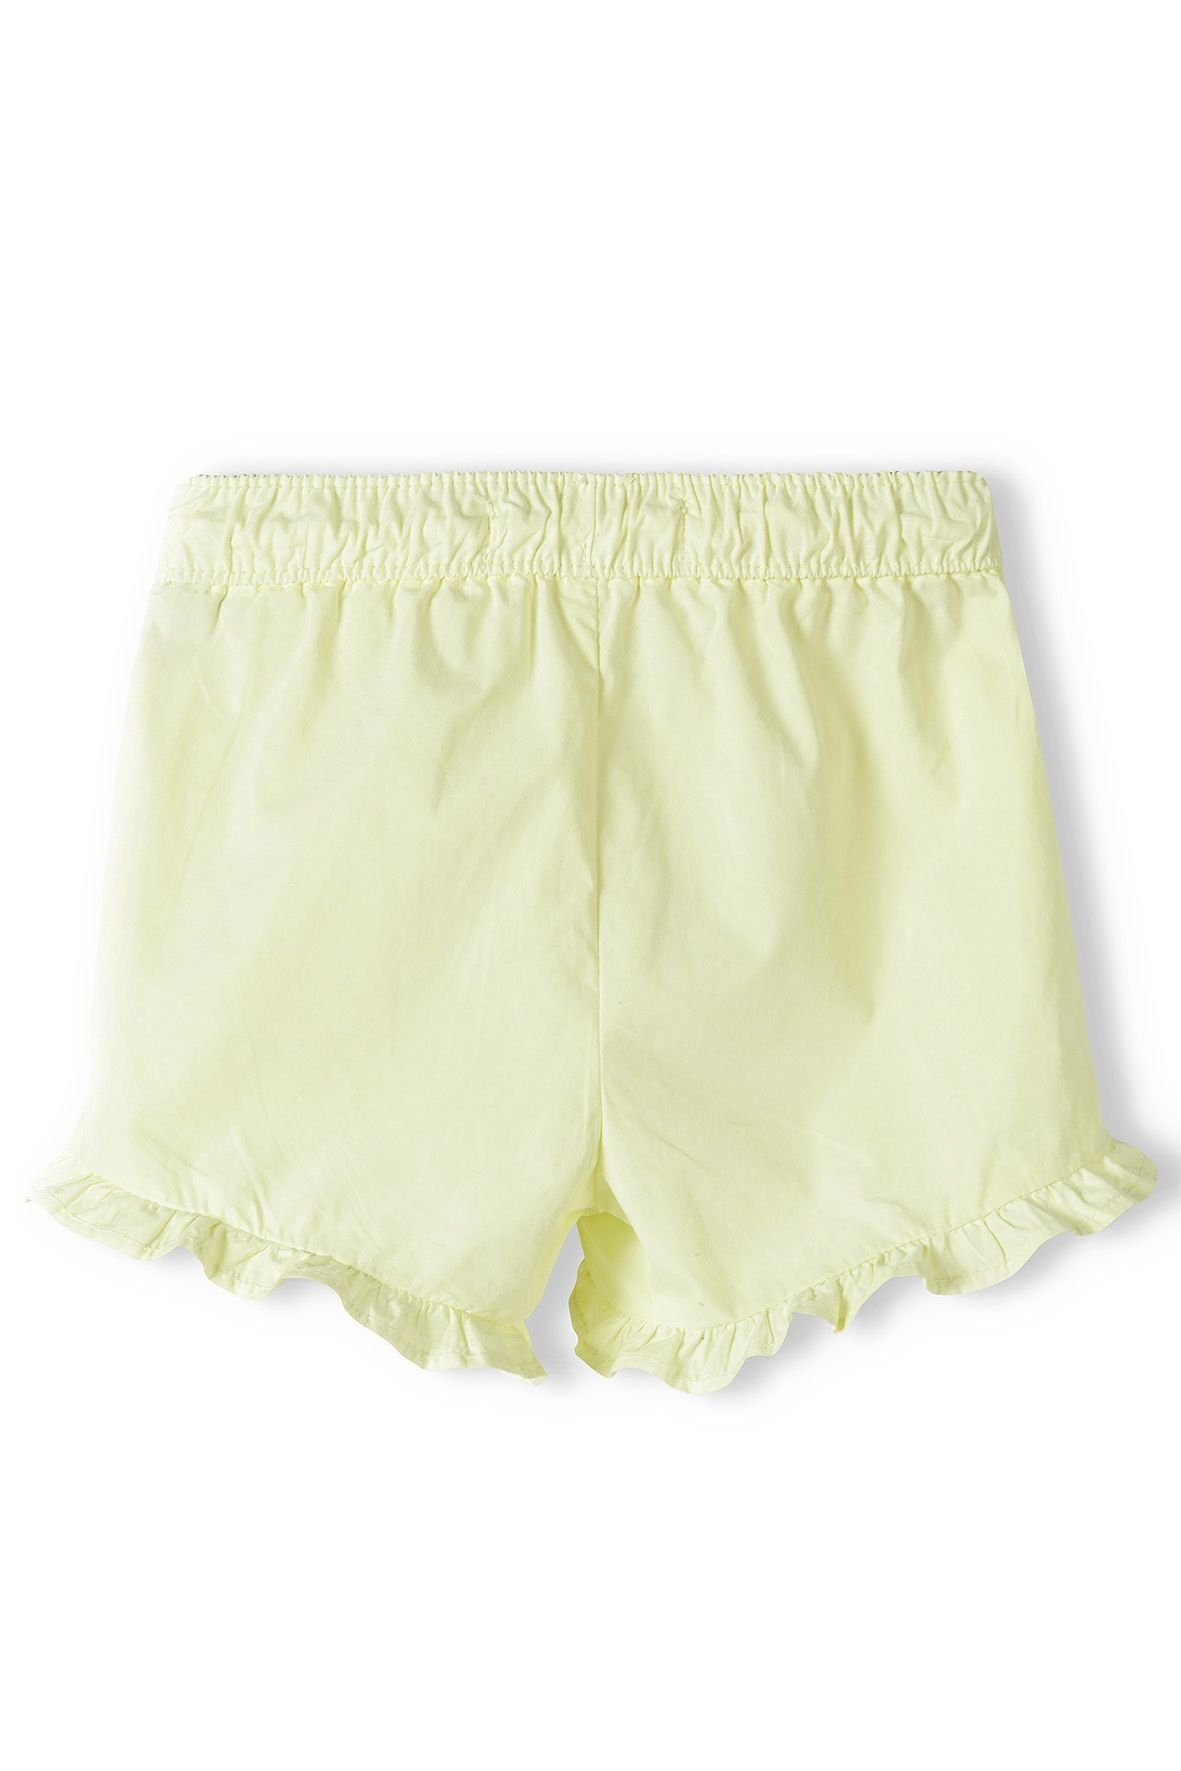 Shorts MINOTI Gelb (12m-14y) Shorts